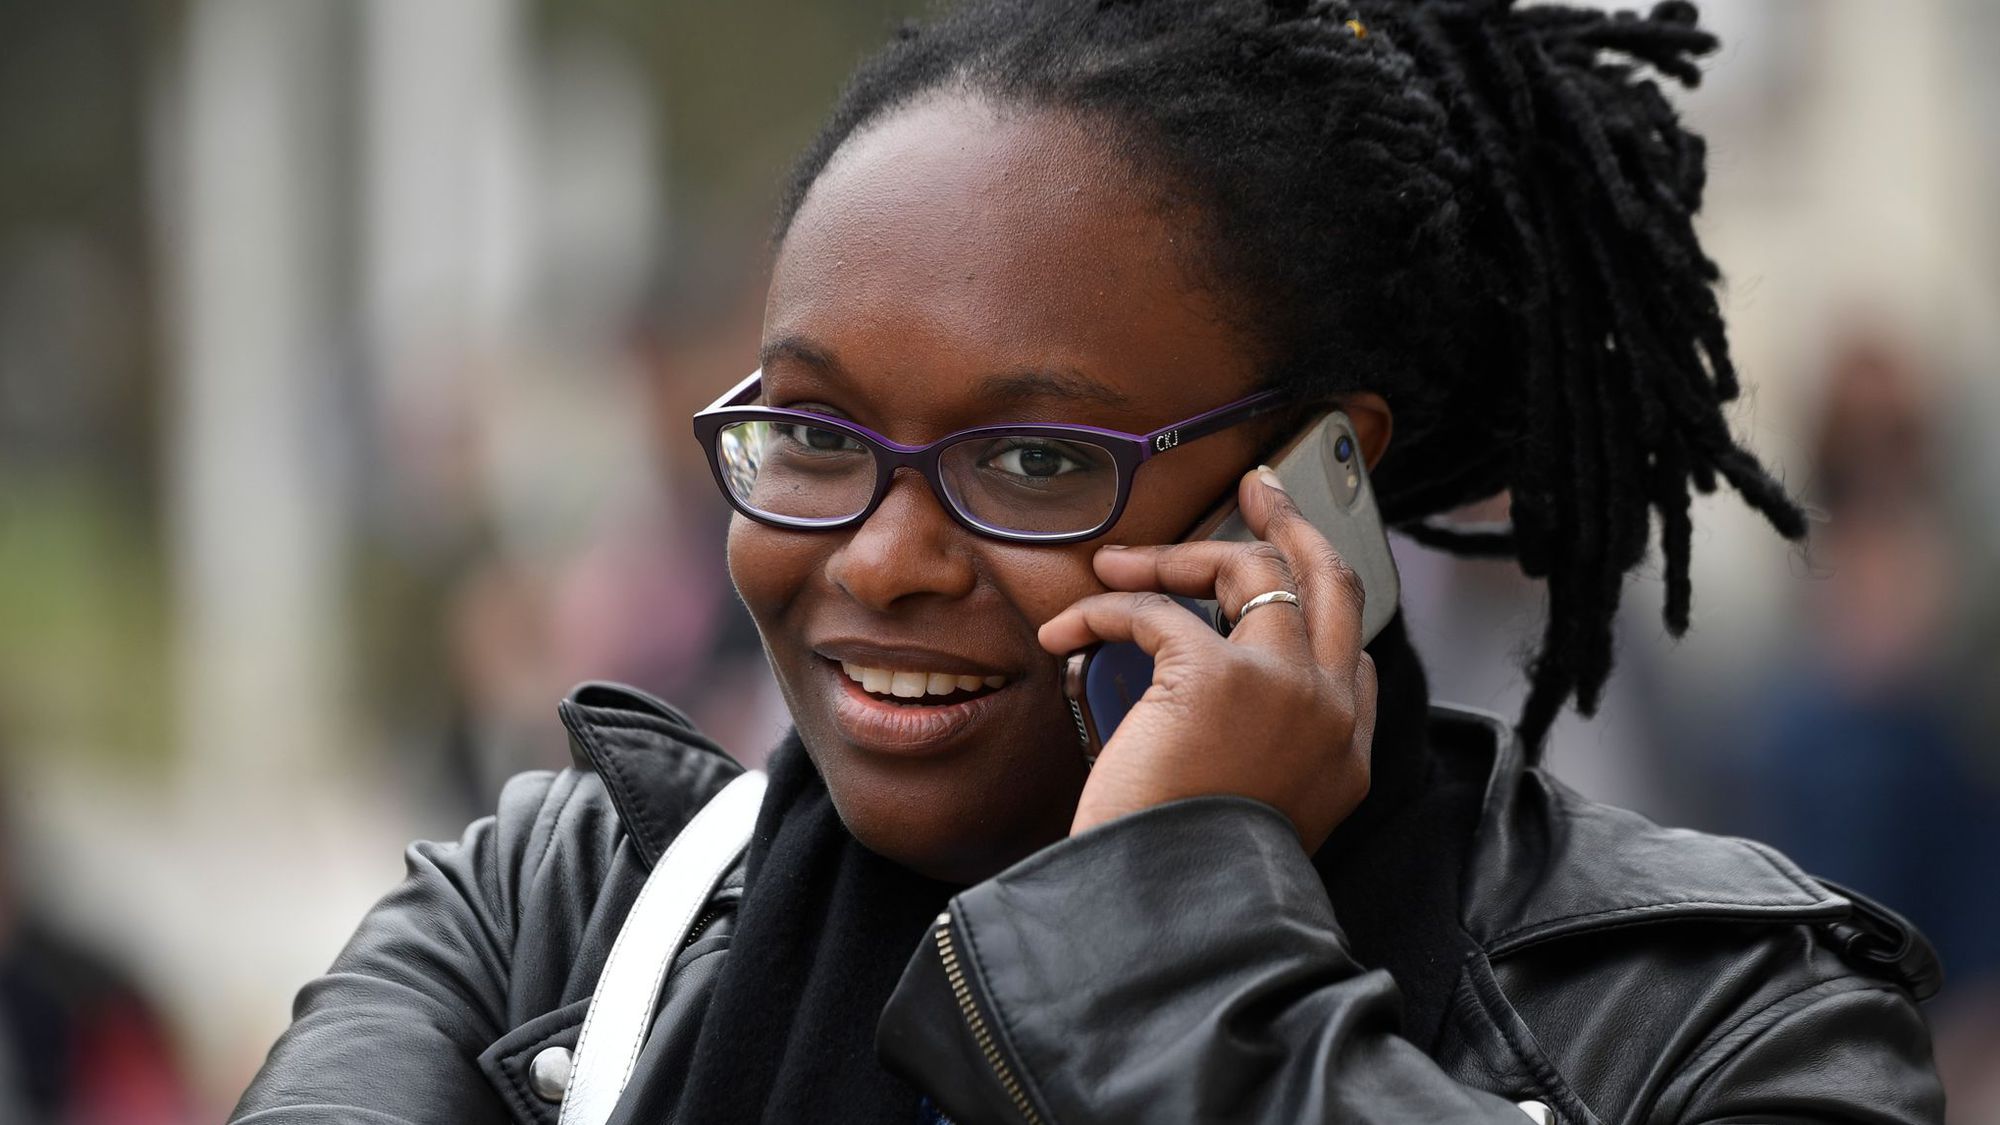 France : déferlante xénophobe sur Twitter après un SMS polémique attribué à Sibeth Ndiaye